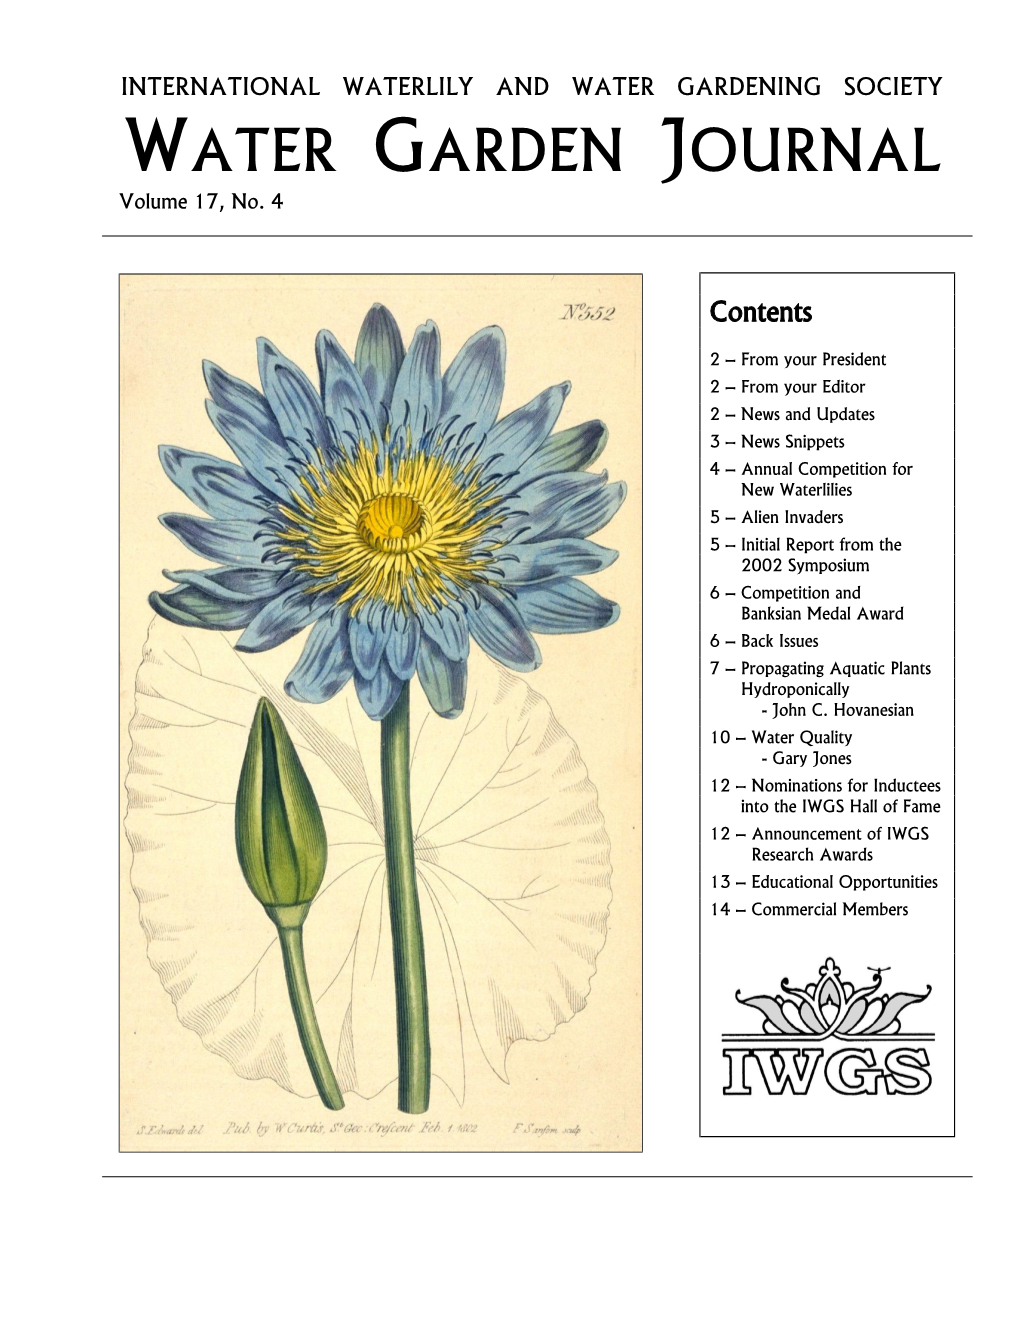 WATER GARDEN JOURNAL Volume 17, No